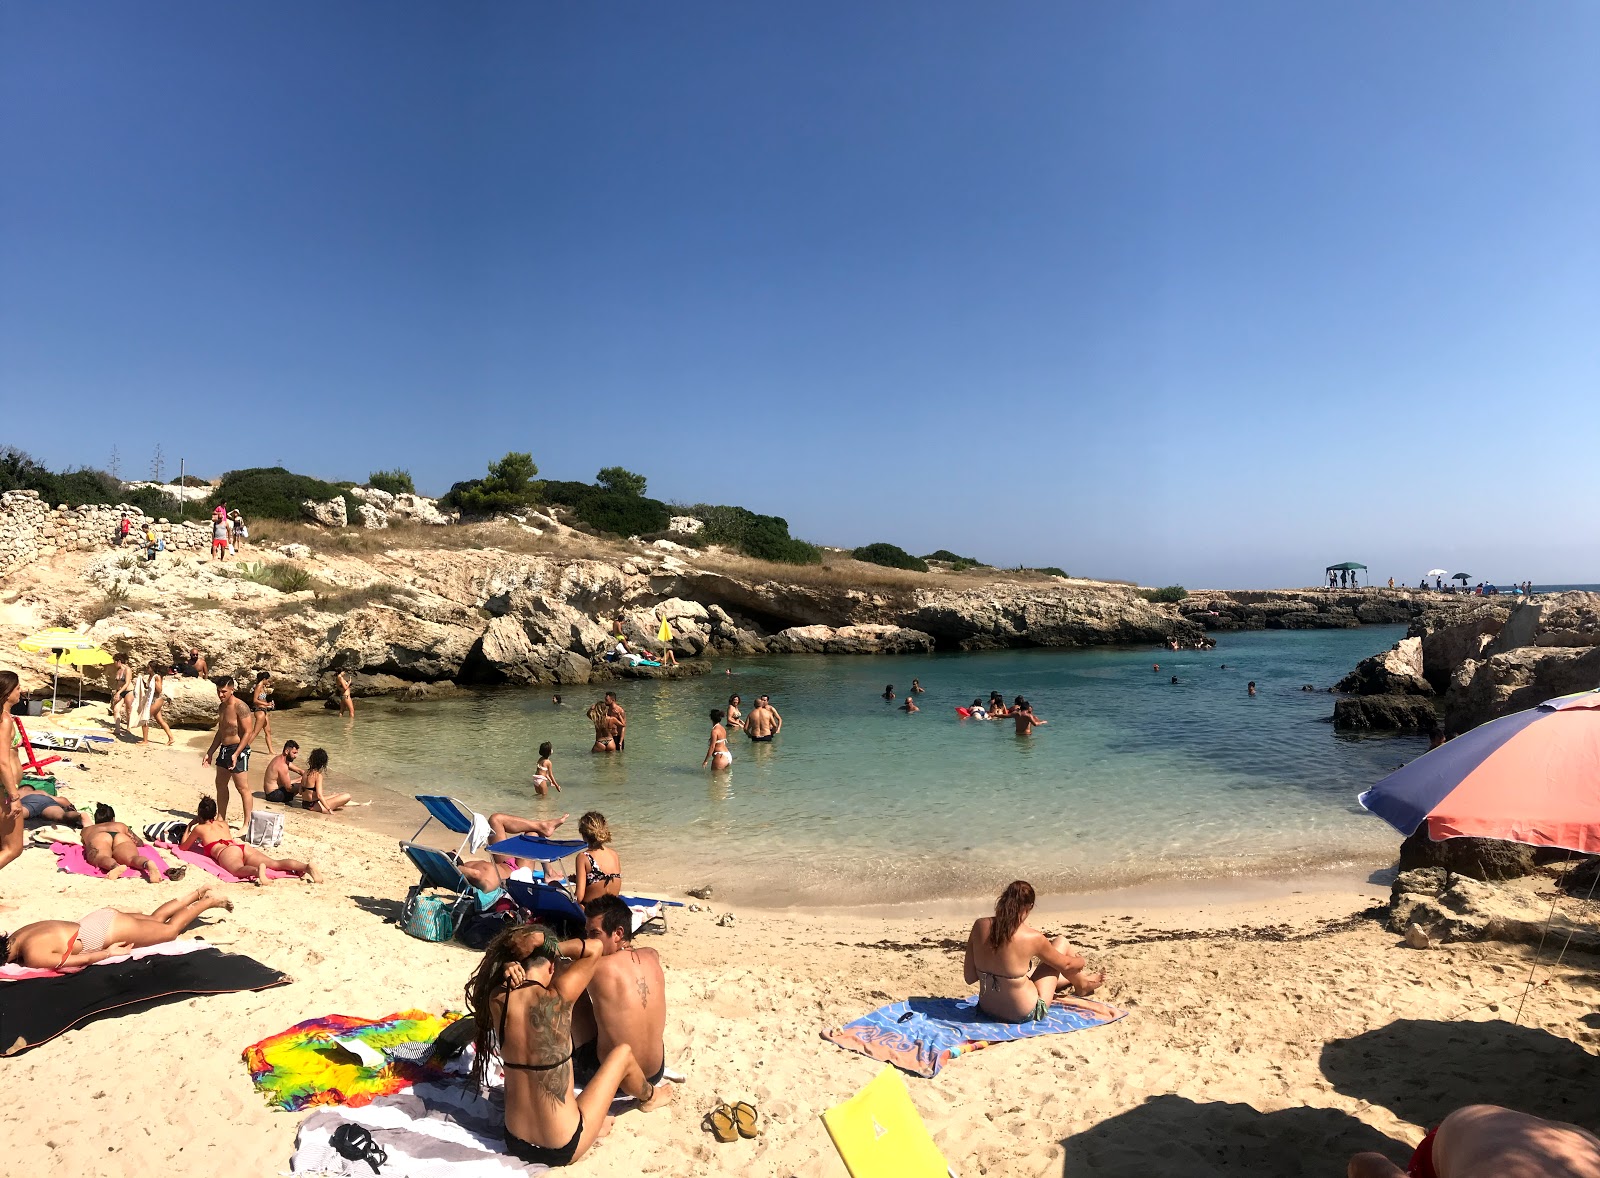 Cala Verde beach'in fotoğrafı küçük koy ile birlikte